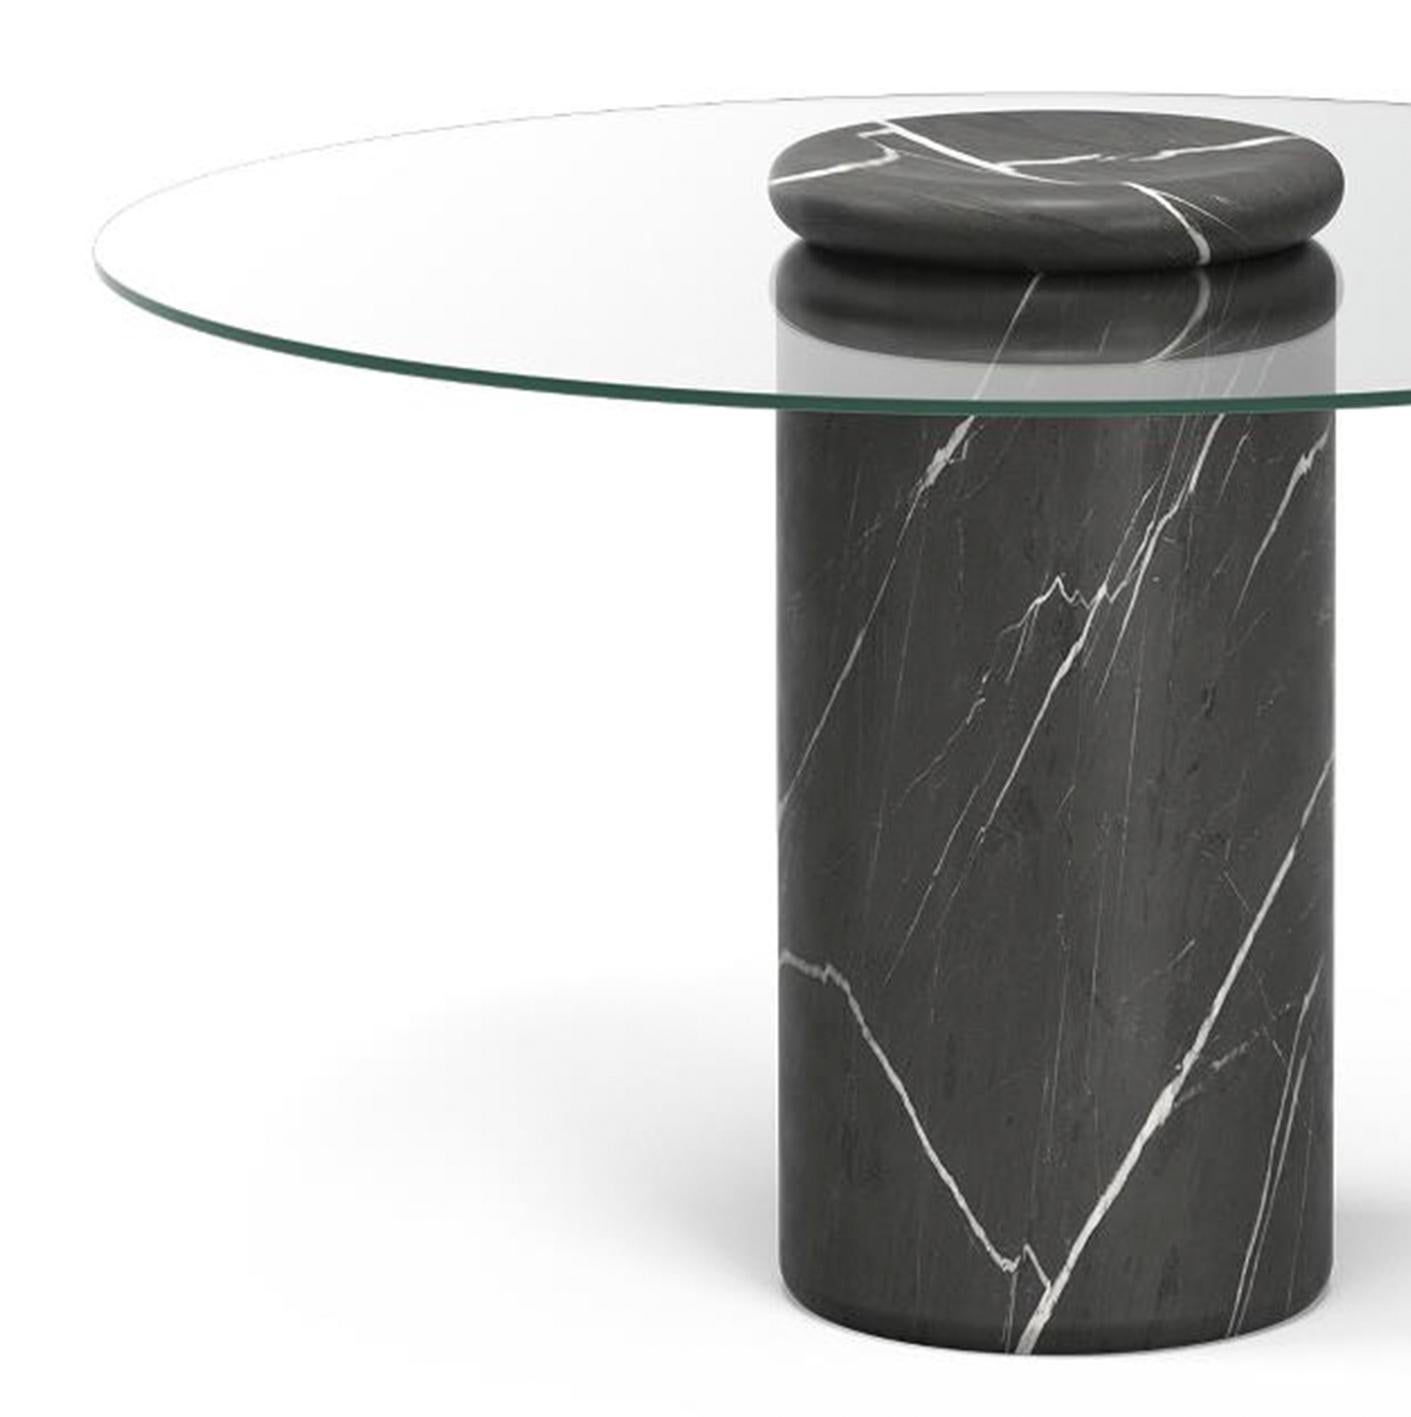 Table conçue par Angelo Mangiarotti 

Castore est une table en verre et en marbre de l'architecte, sculpteur et designer italien Angelo Mangiarotti. Conçu en 1975 pour Sorgente dei Mobili, ce design distinct est maintenant présenté par Karakter,